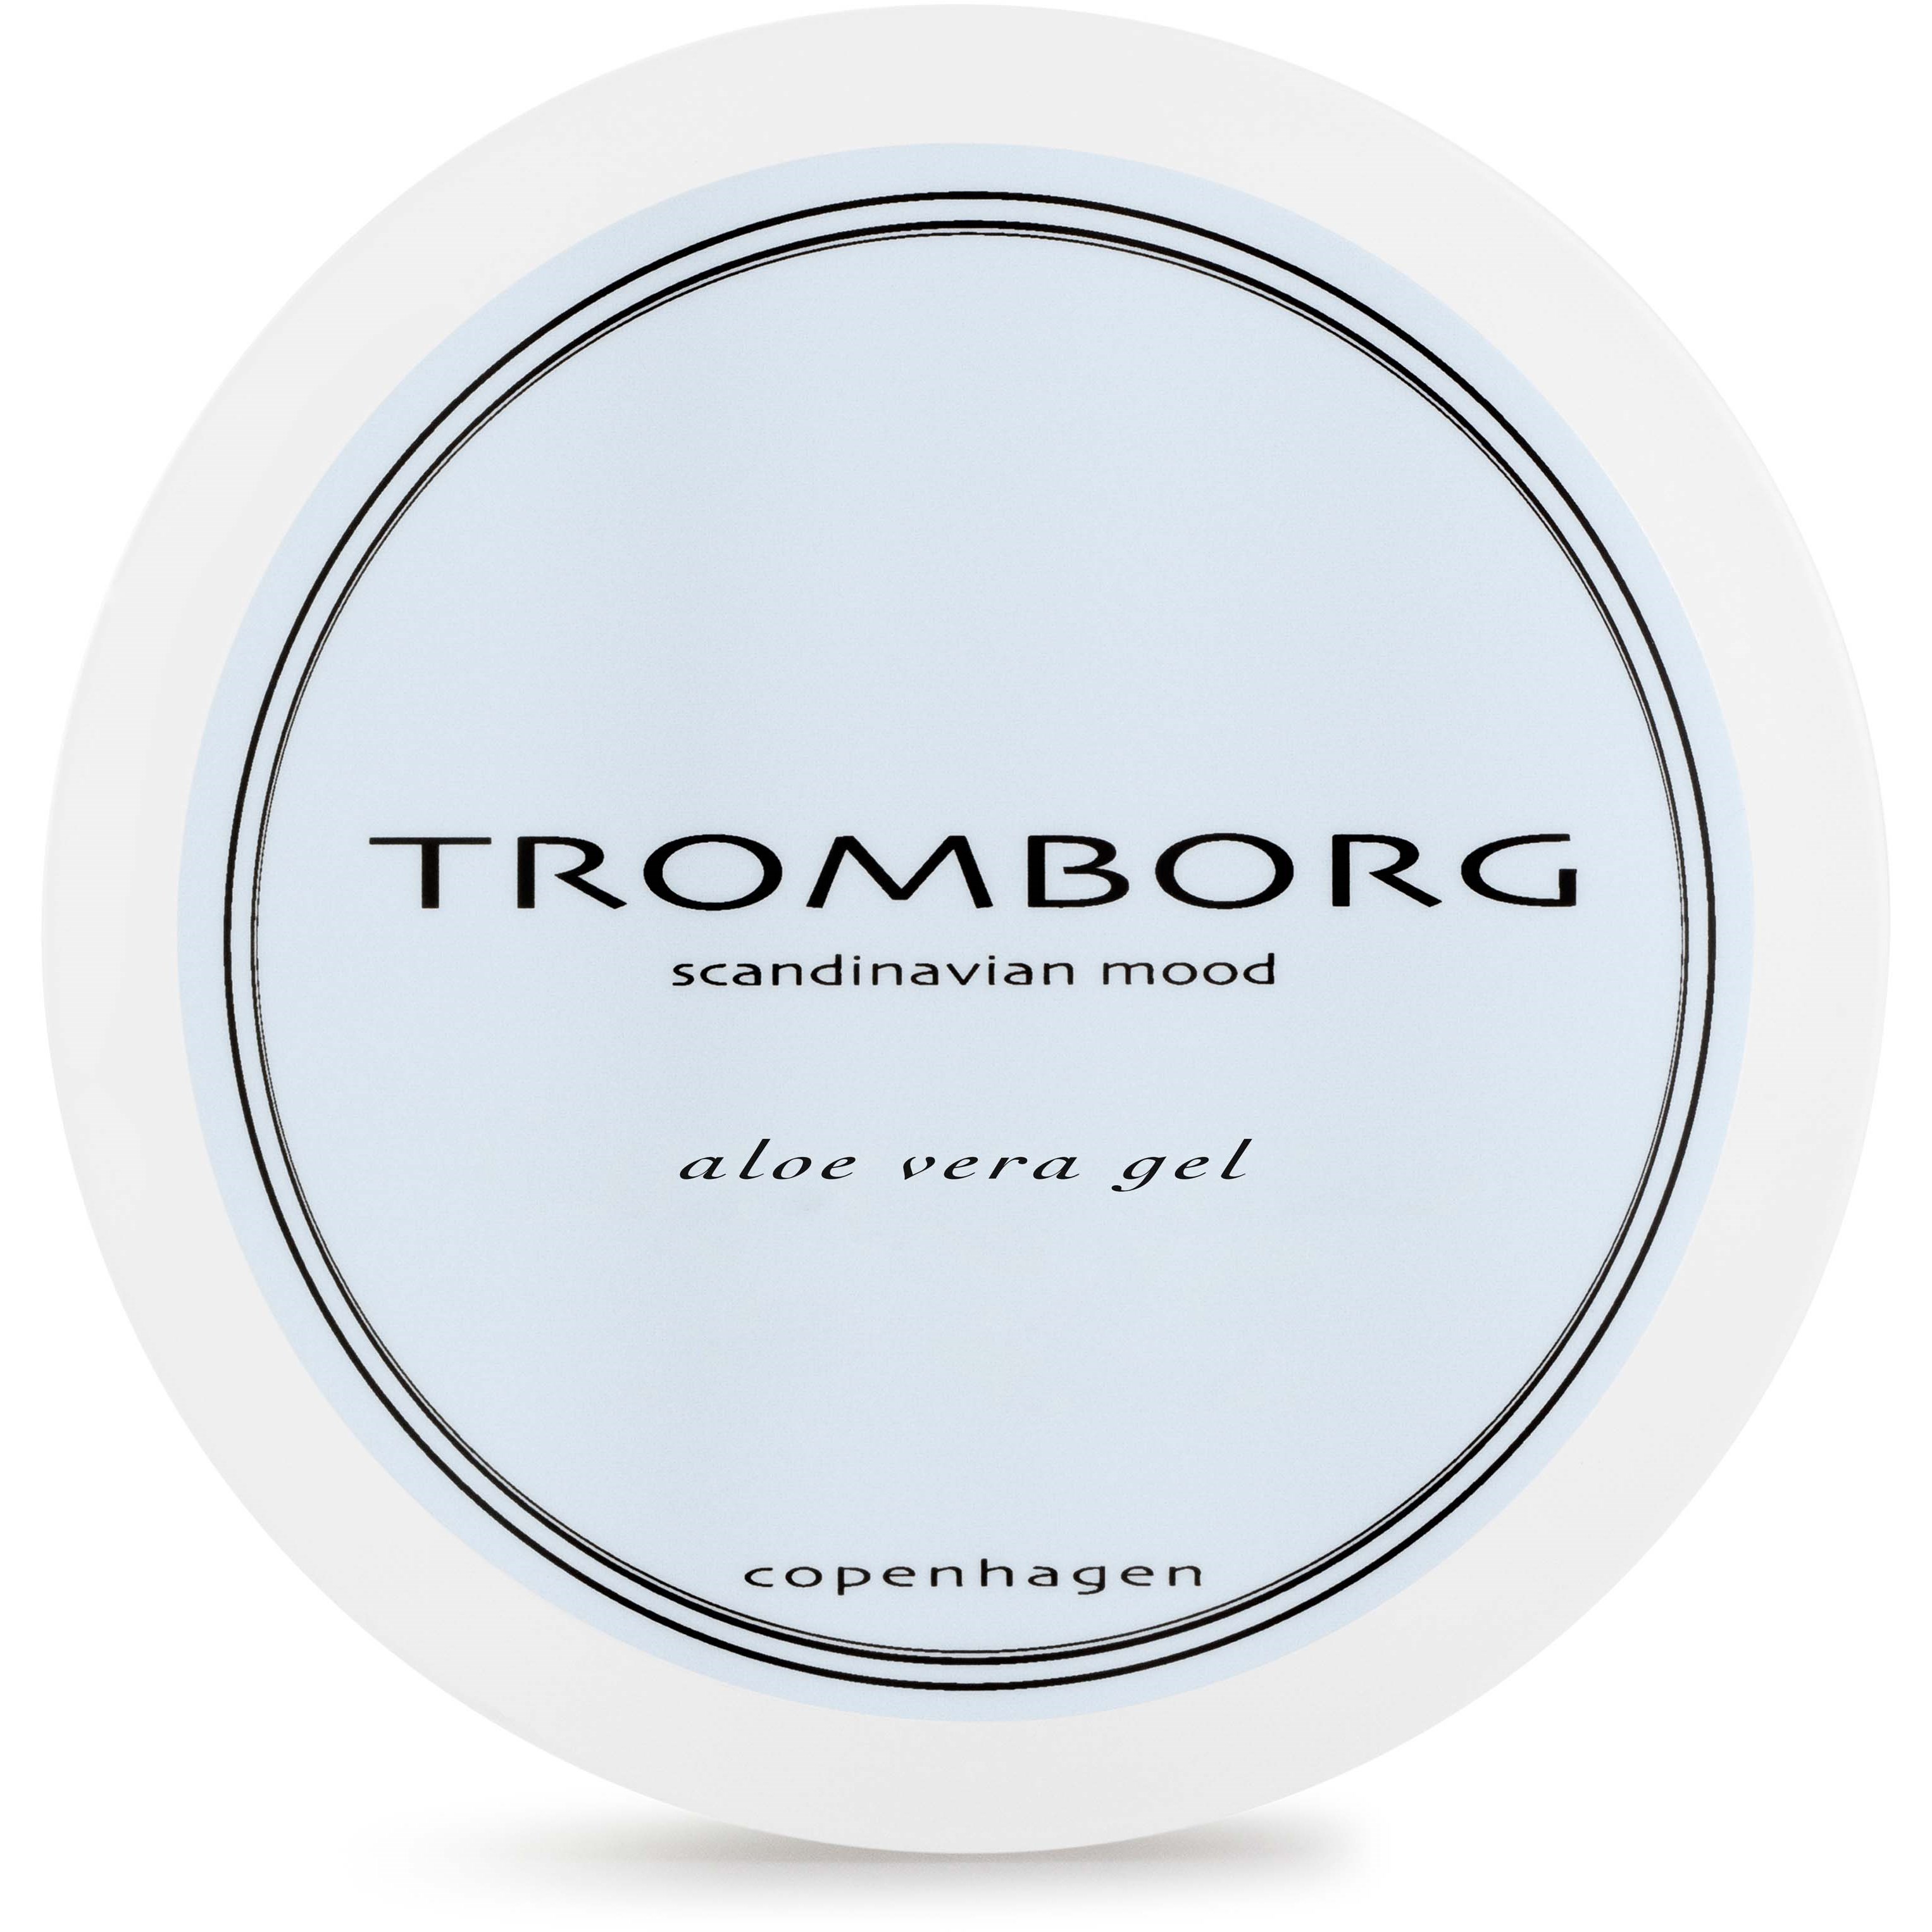 Tromborg